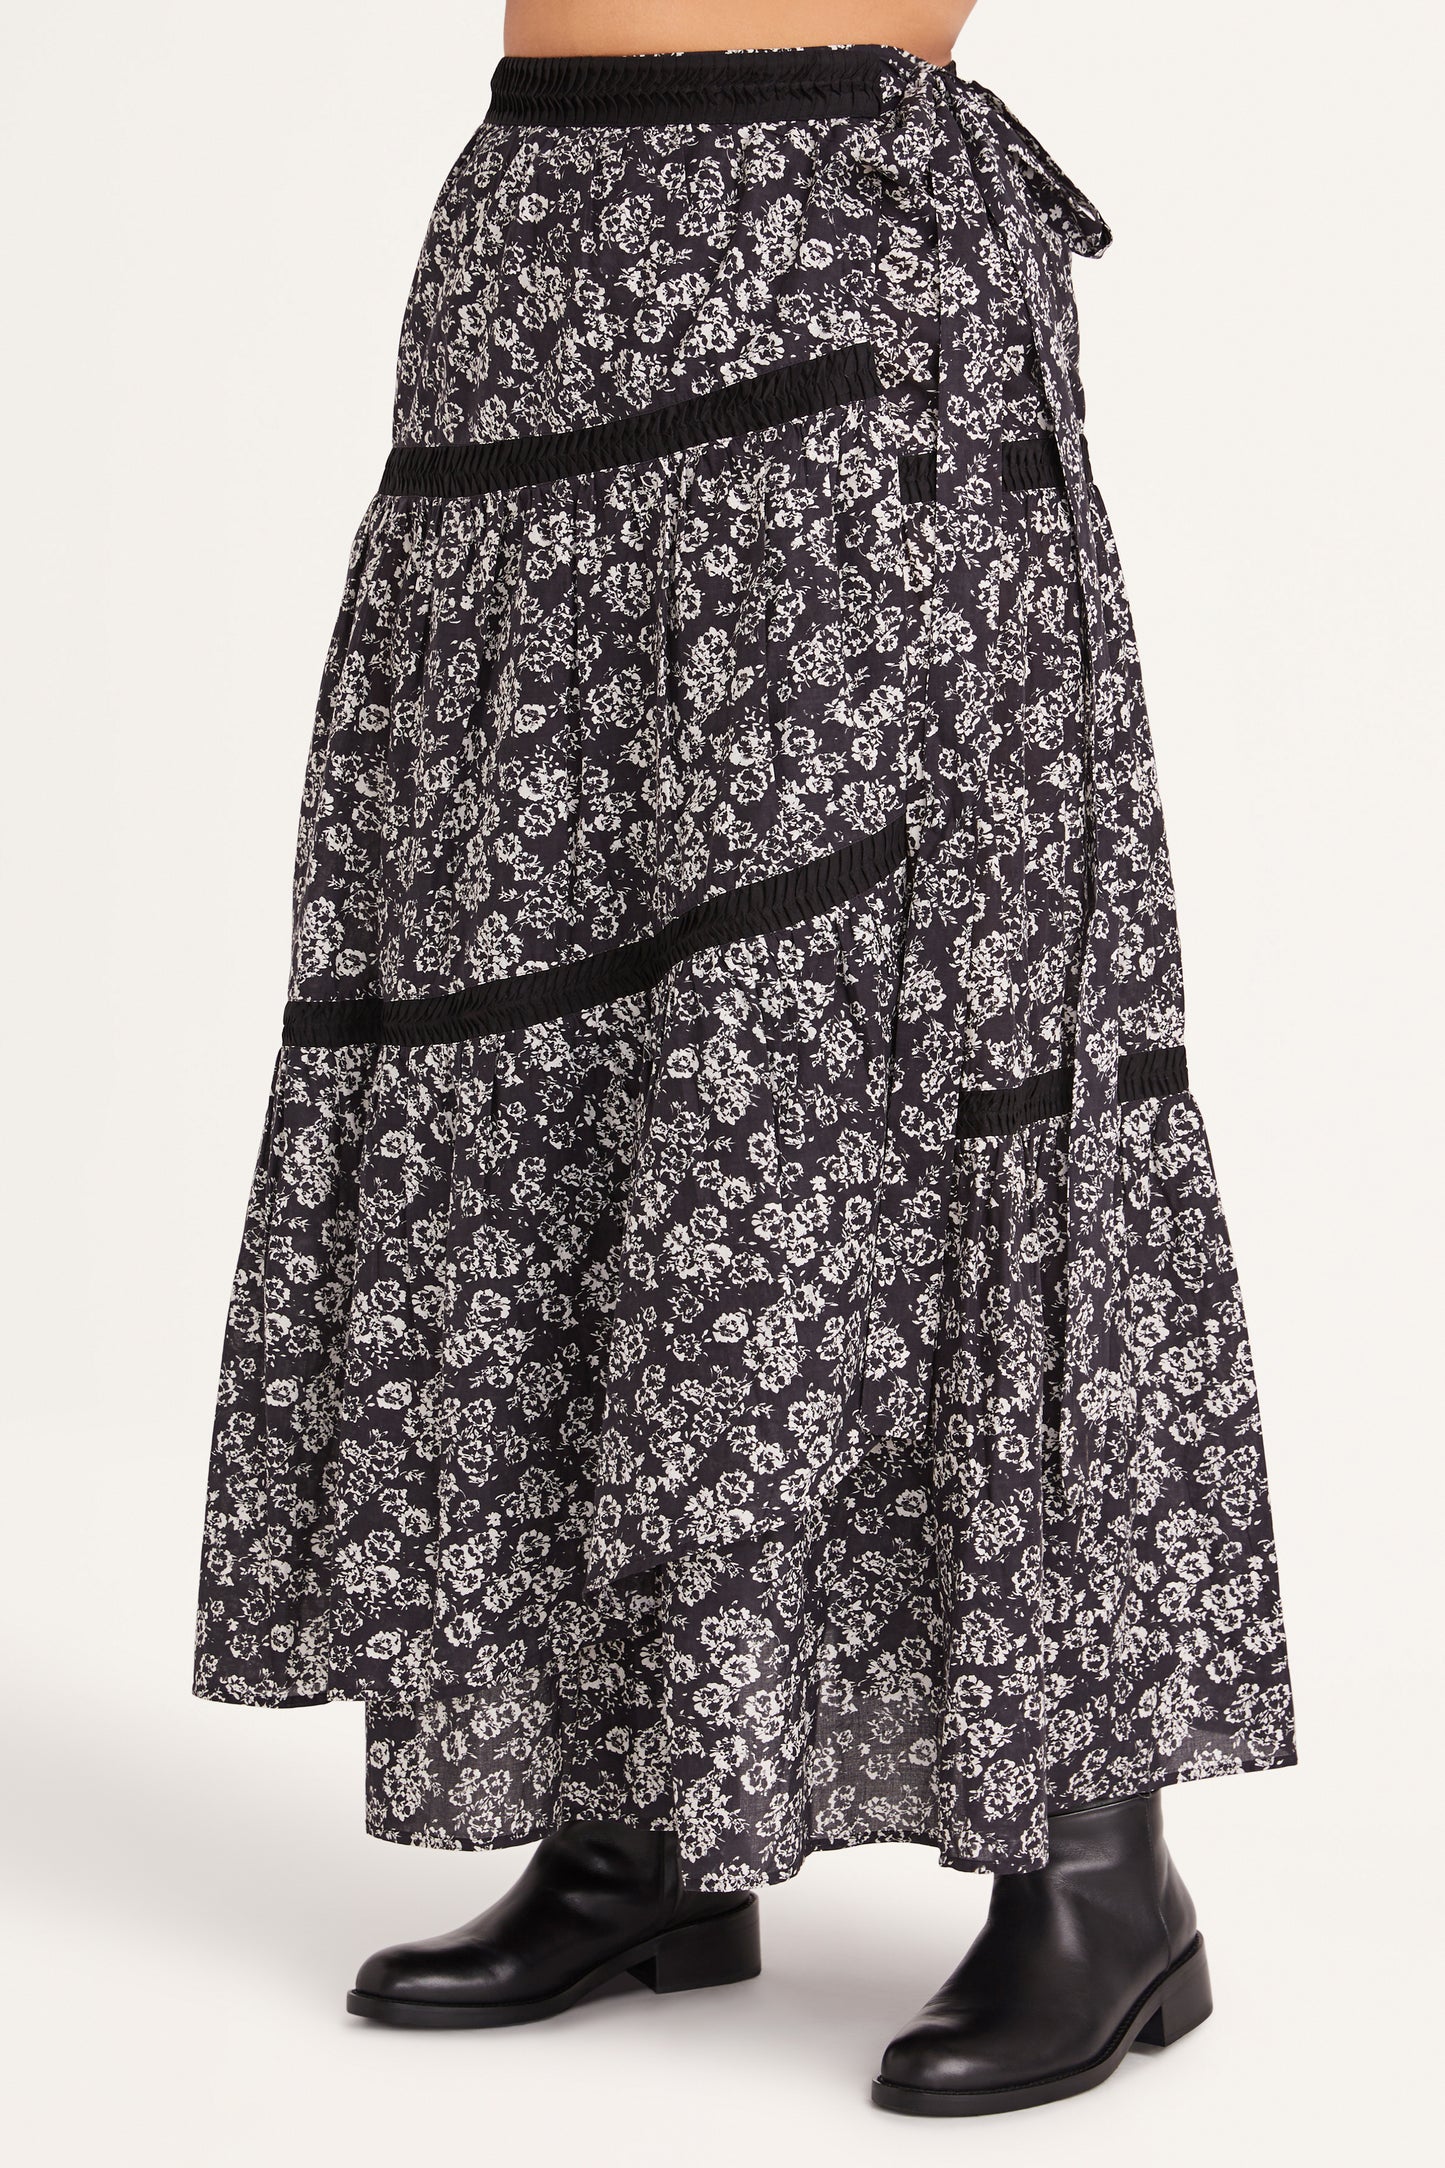 Prins Skirt in Black Stamped Floral Print